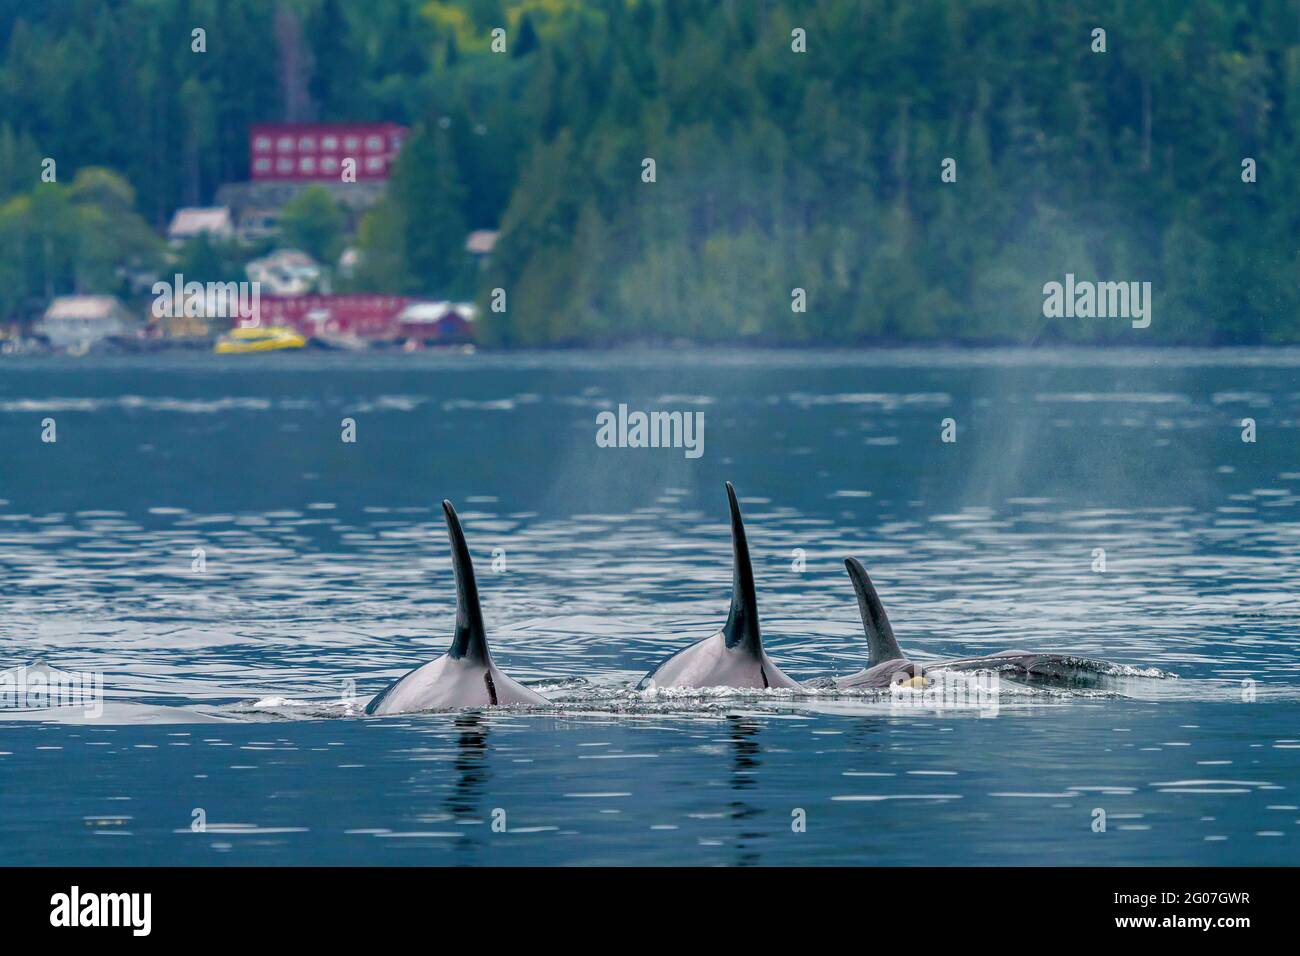 Famiglia pod di orche residenti nord nuoto da Telegraph Cove, Vancouver nord, territorio delle prime Nazioni, British Columbia, Canada. Foto Stock